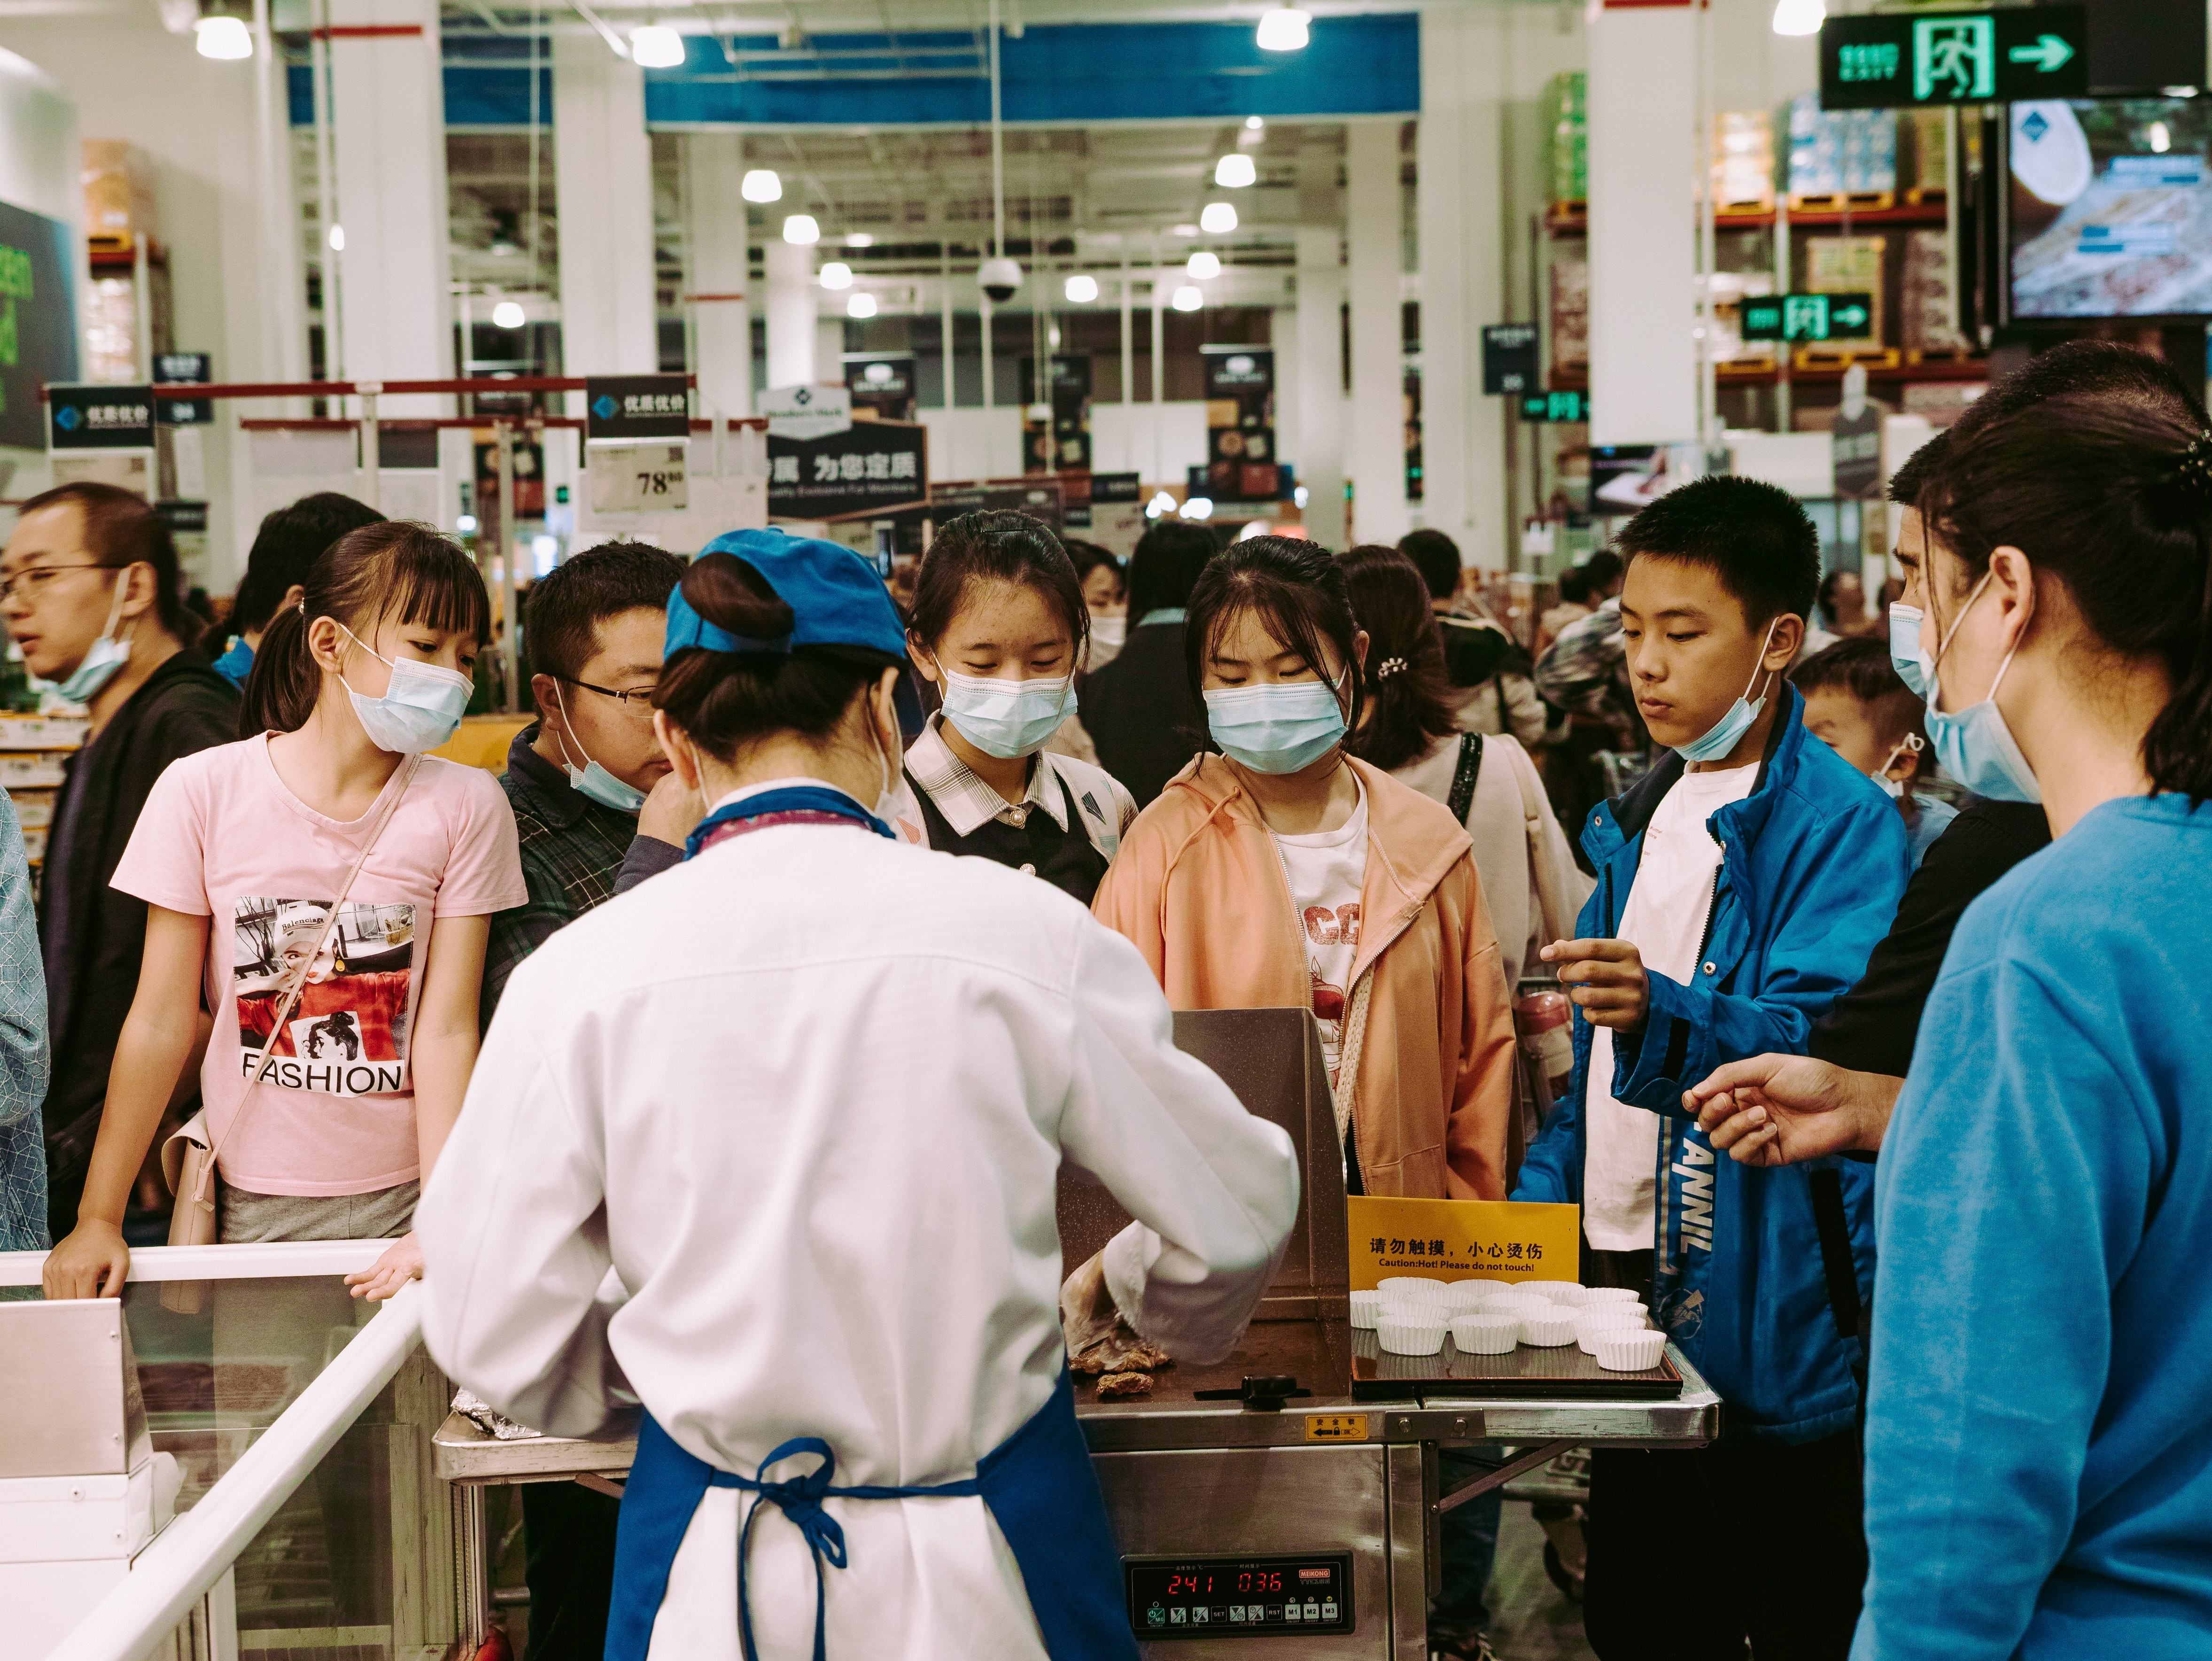 Локальна епідемія: у Китаї виявили новий осередок коронавірусу - Новини Здоров’я